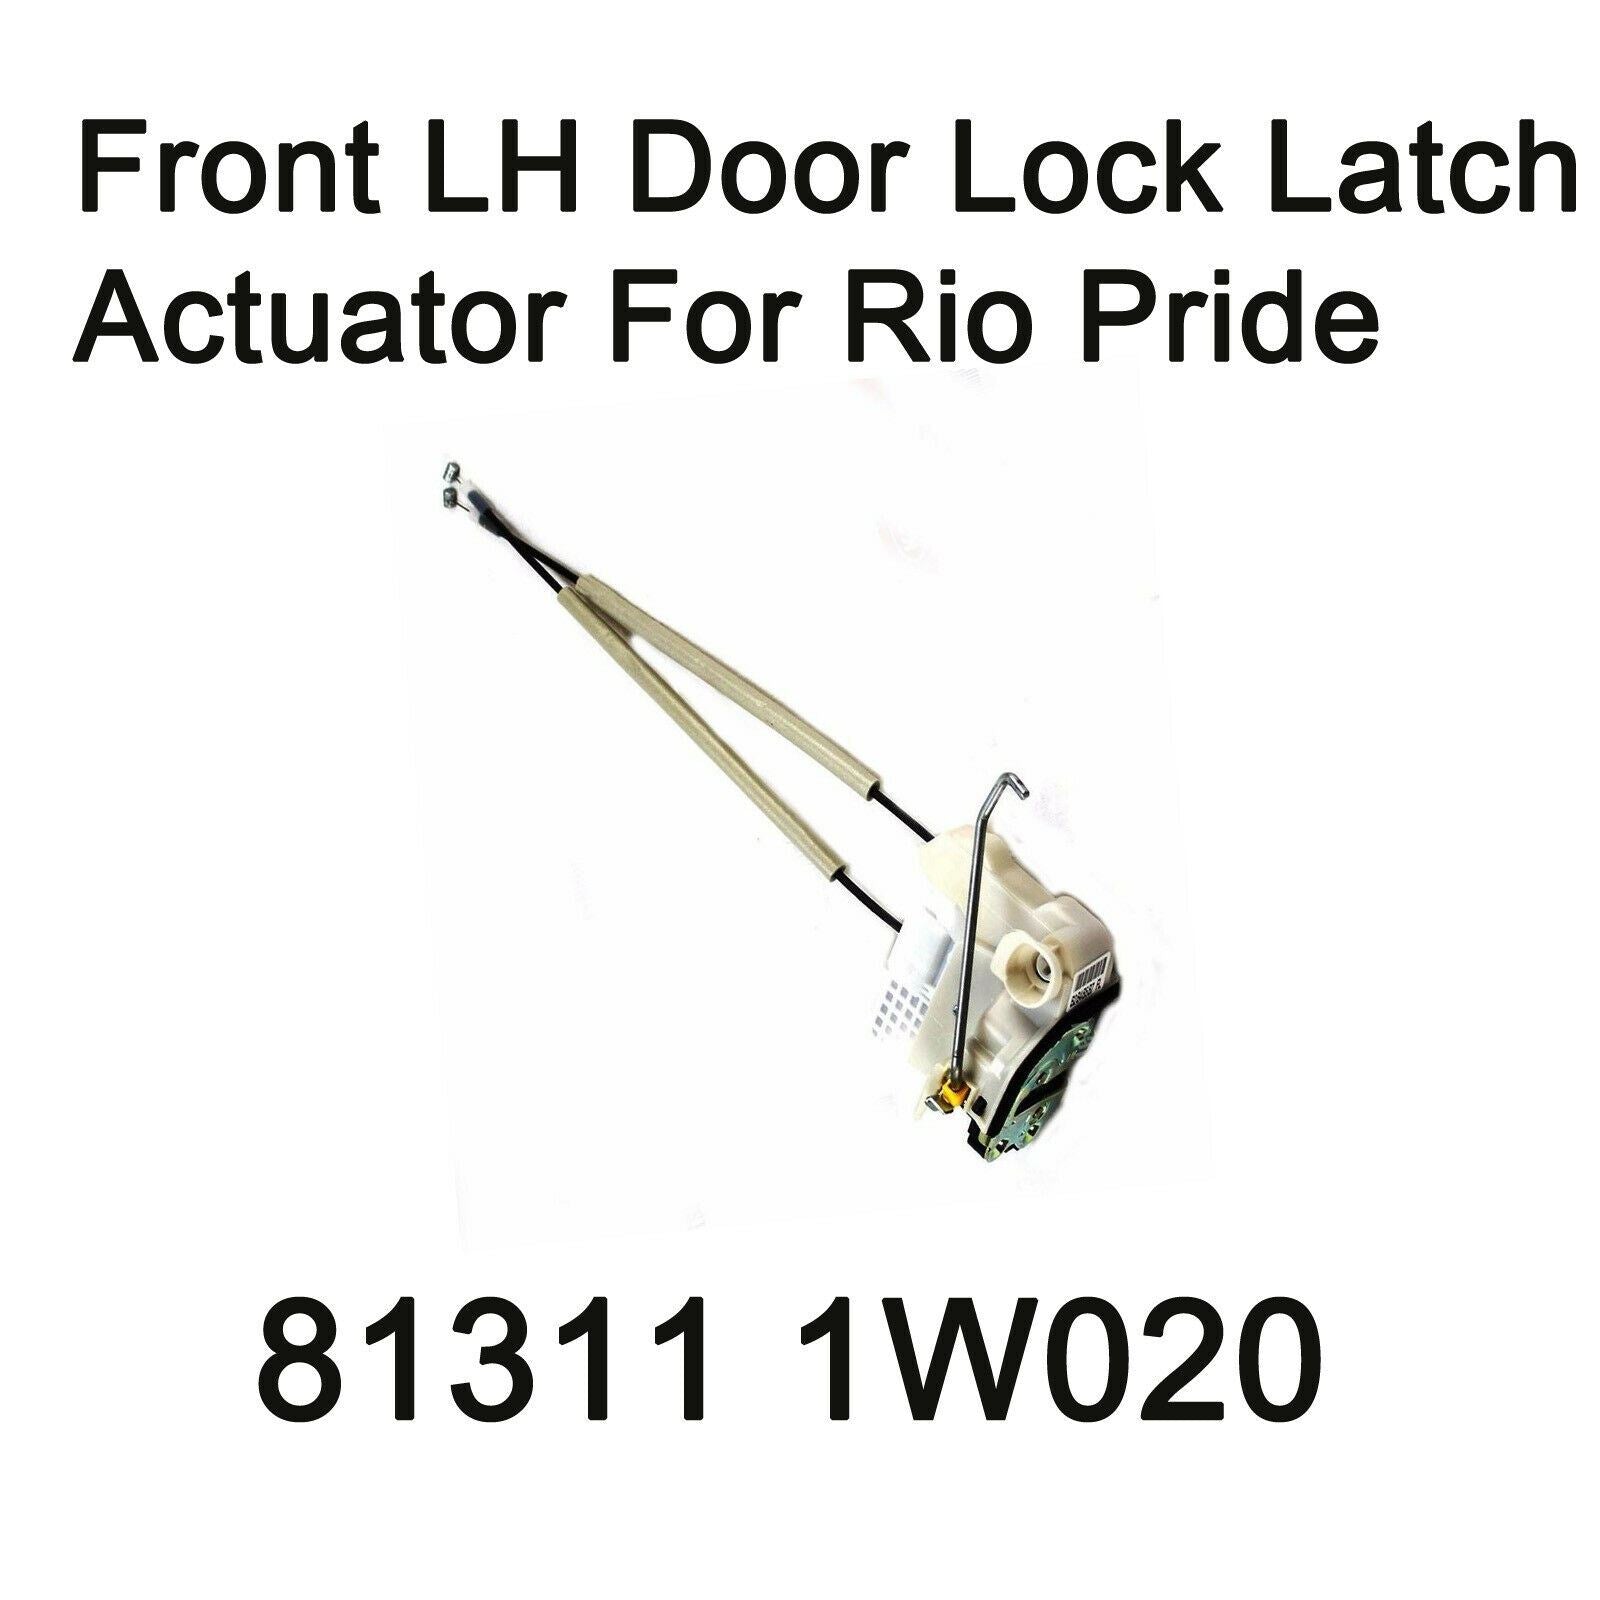 Actuador de pestillo de bloqueo de puerta delantera genuino LH Oem 813111W020 para Kia Rio Pride 12-13